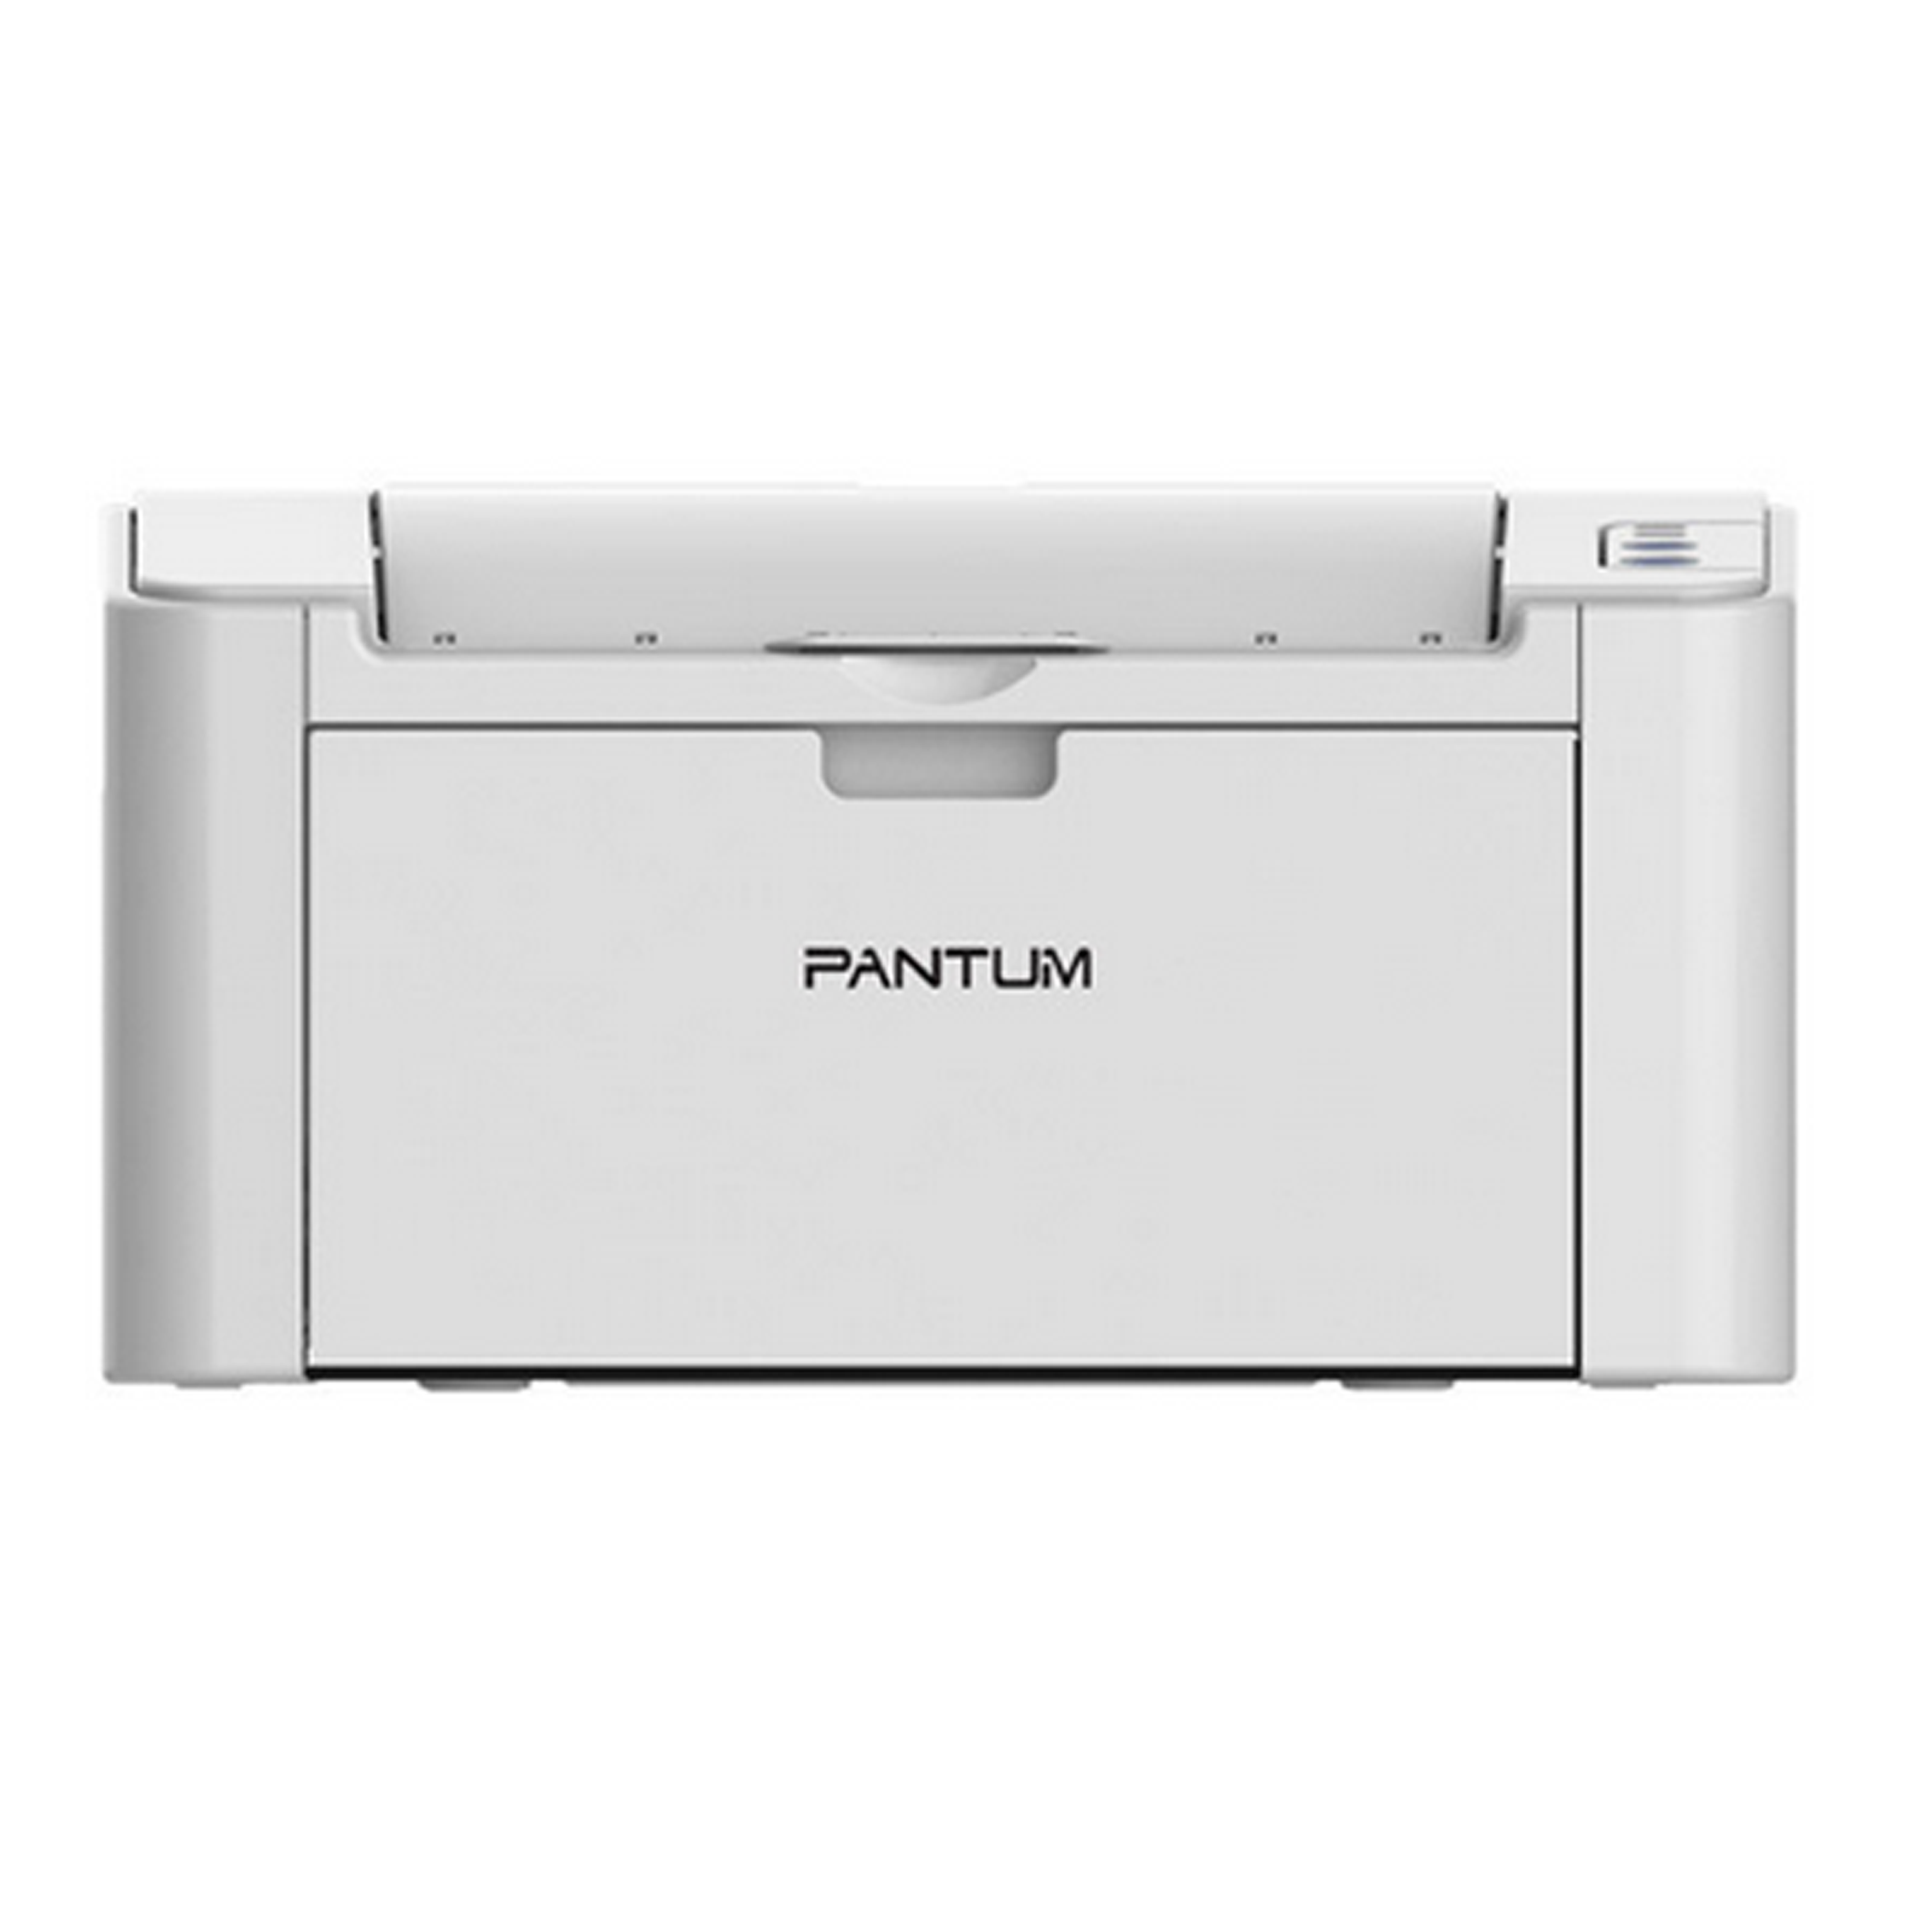 奔图(PANTUM)黑白激光打印机S2000 A4 20页/分钟 节能环保 单打印+免费上门安装+一年质保